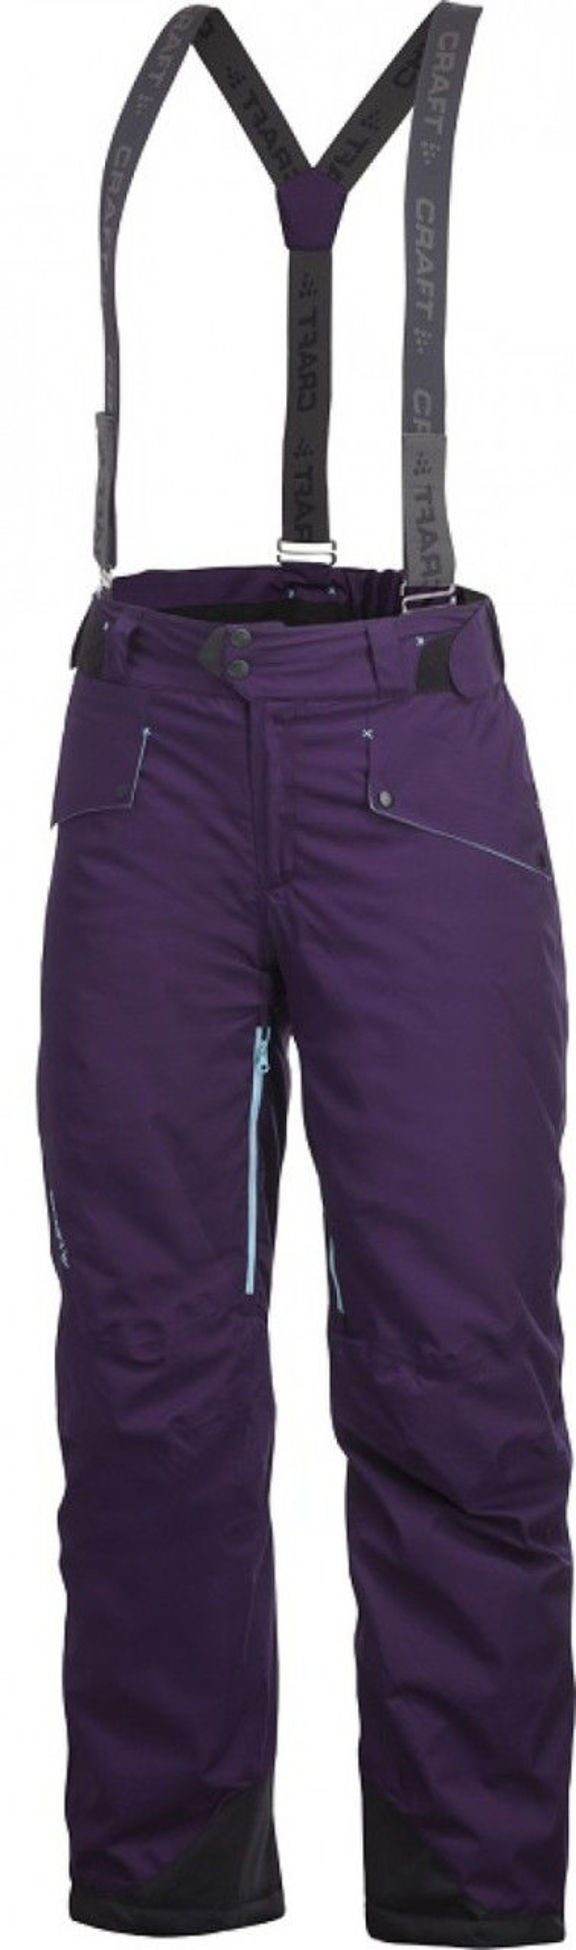 Лижные штаны Craft AA Warm Pant Wmn 2012